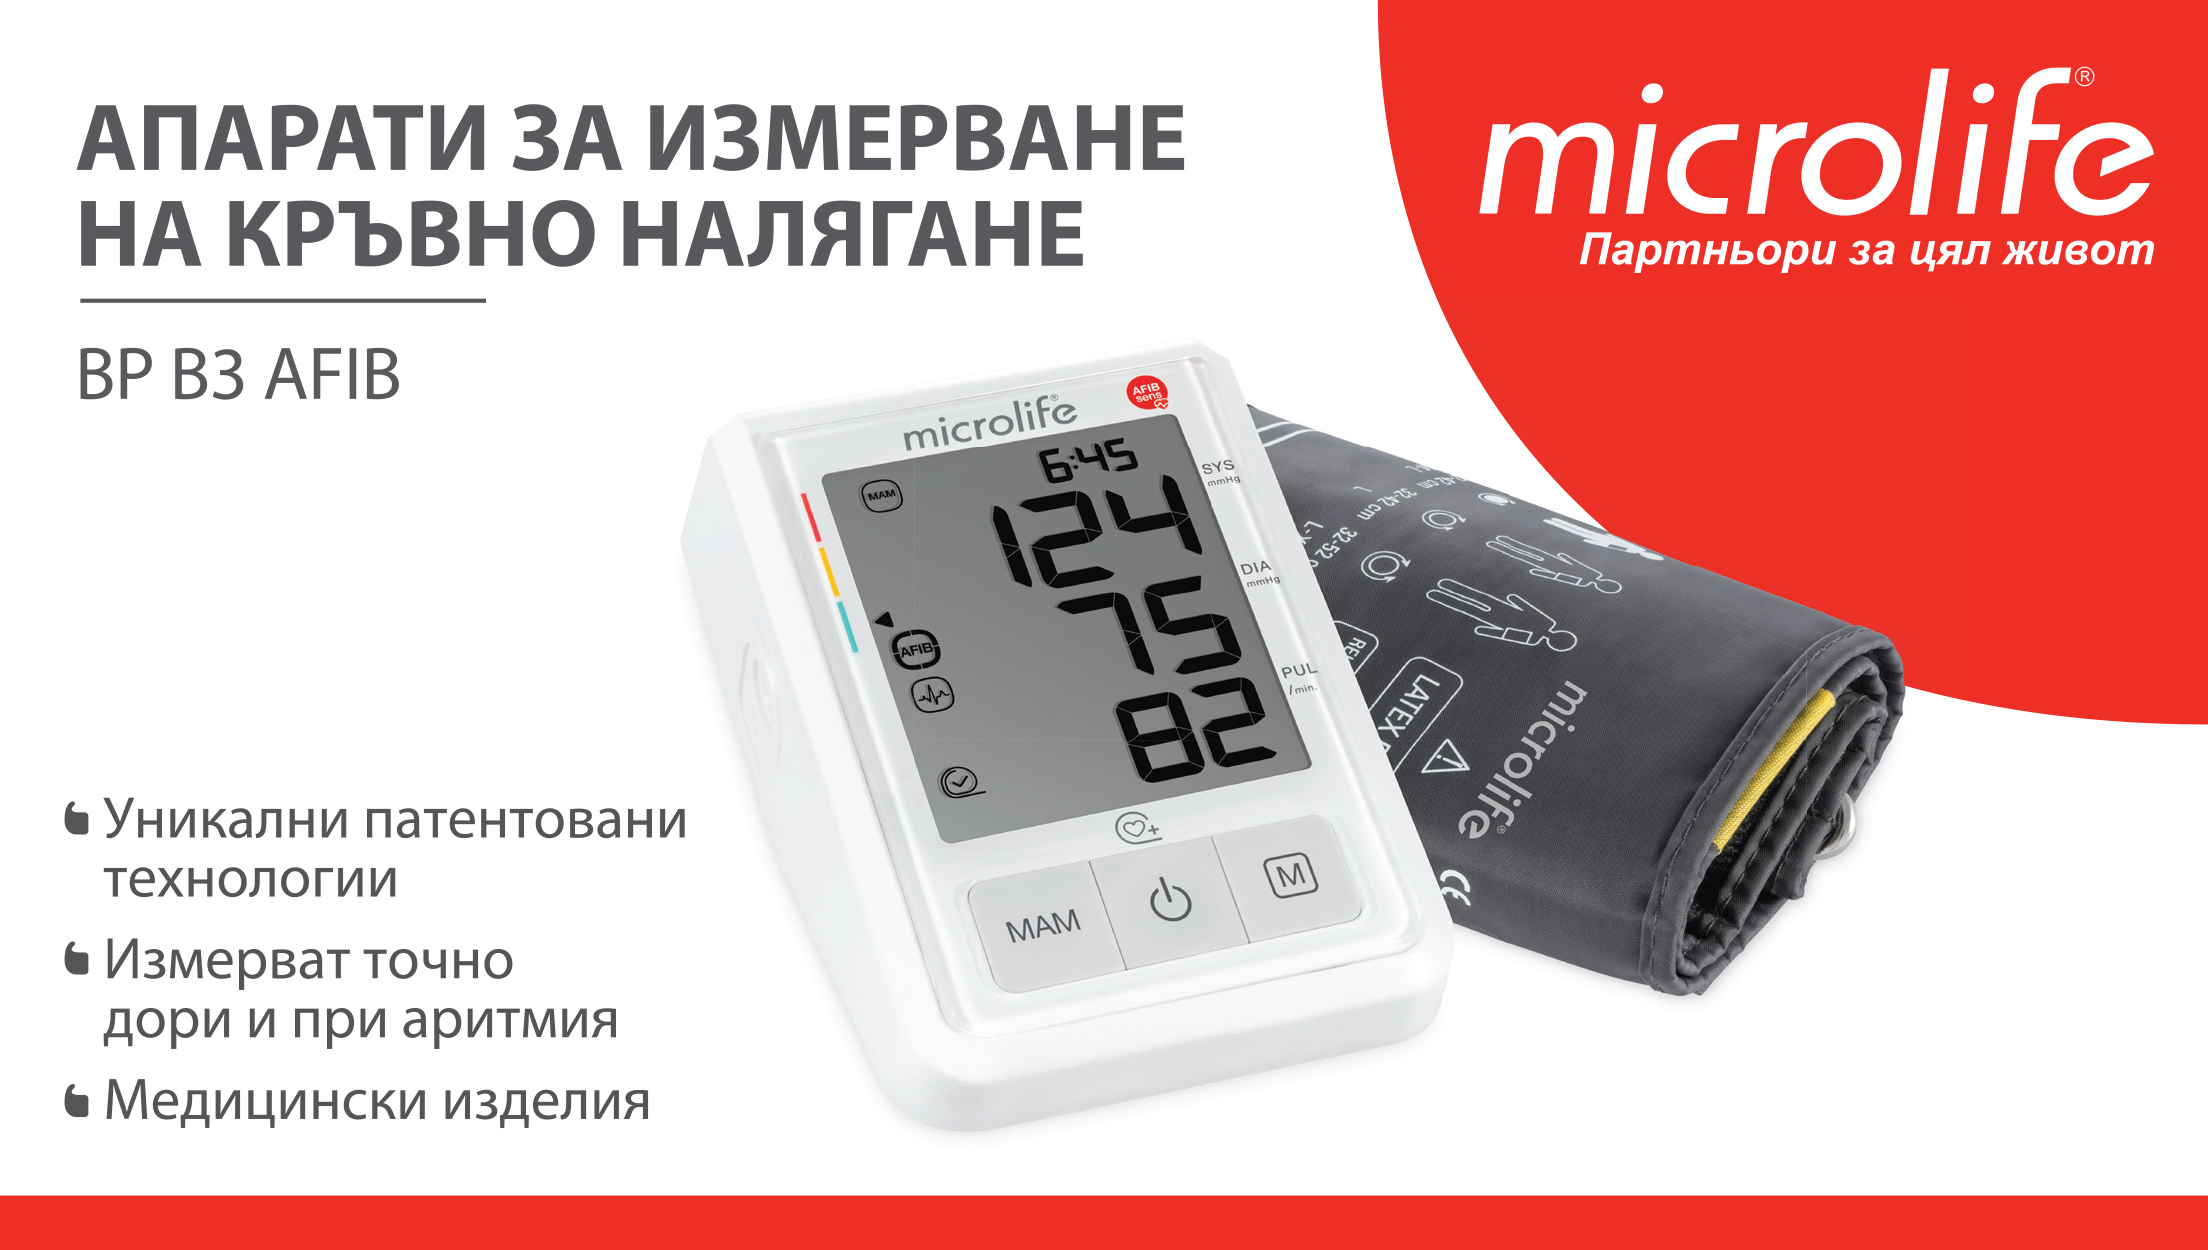 Microlife Апарати за измерване на кръвно налягане